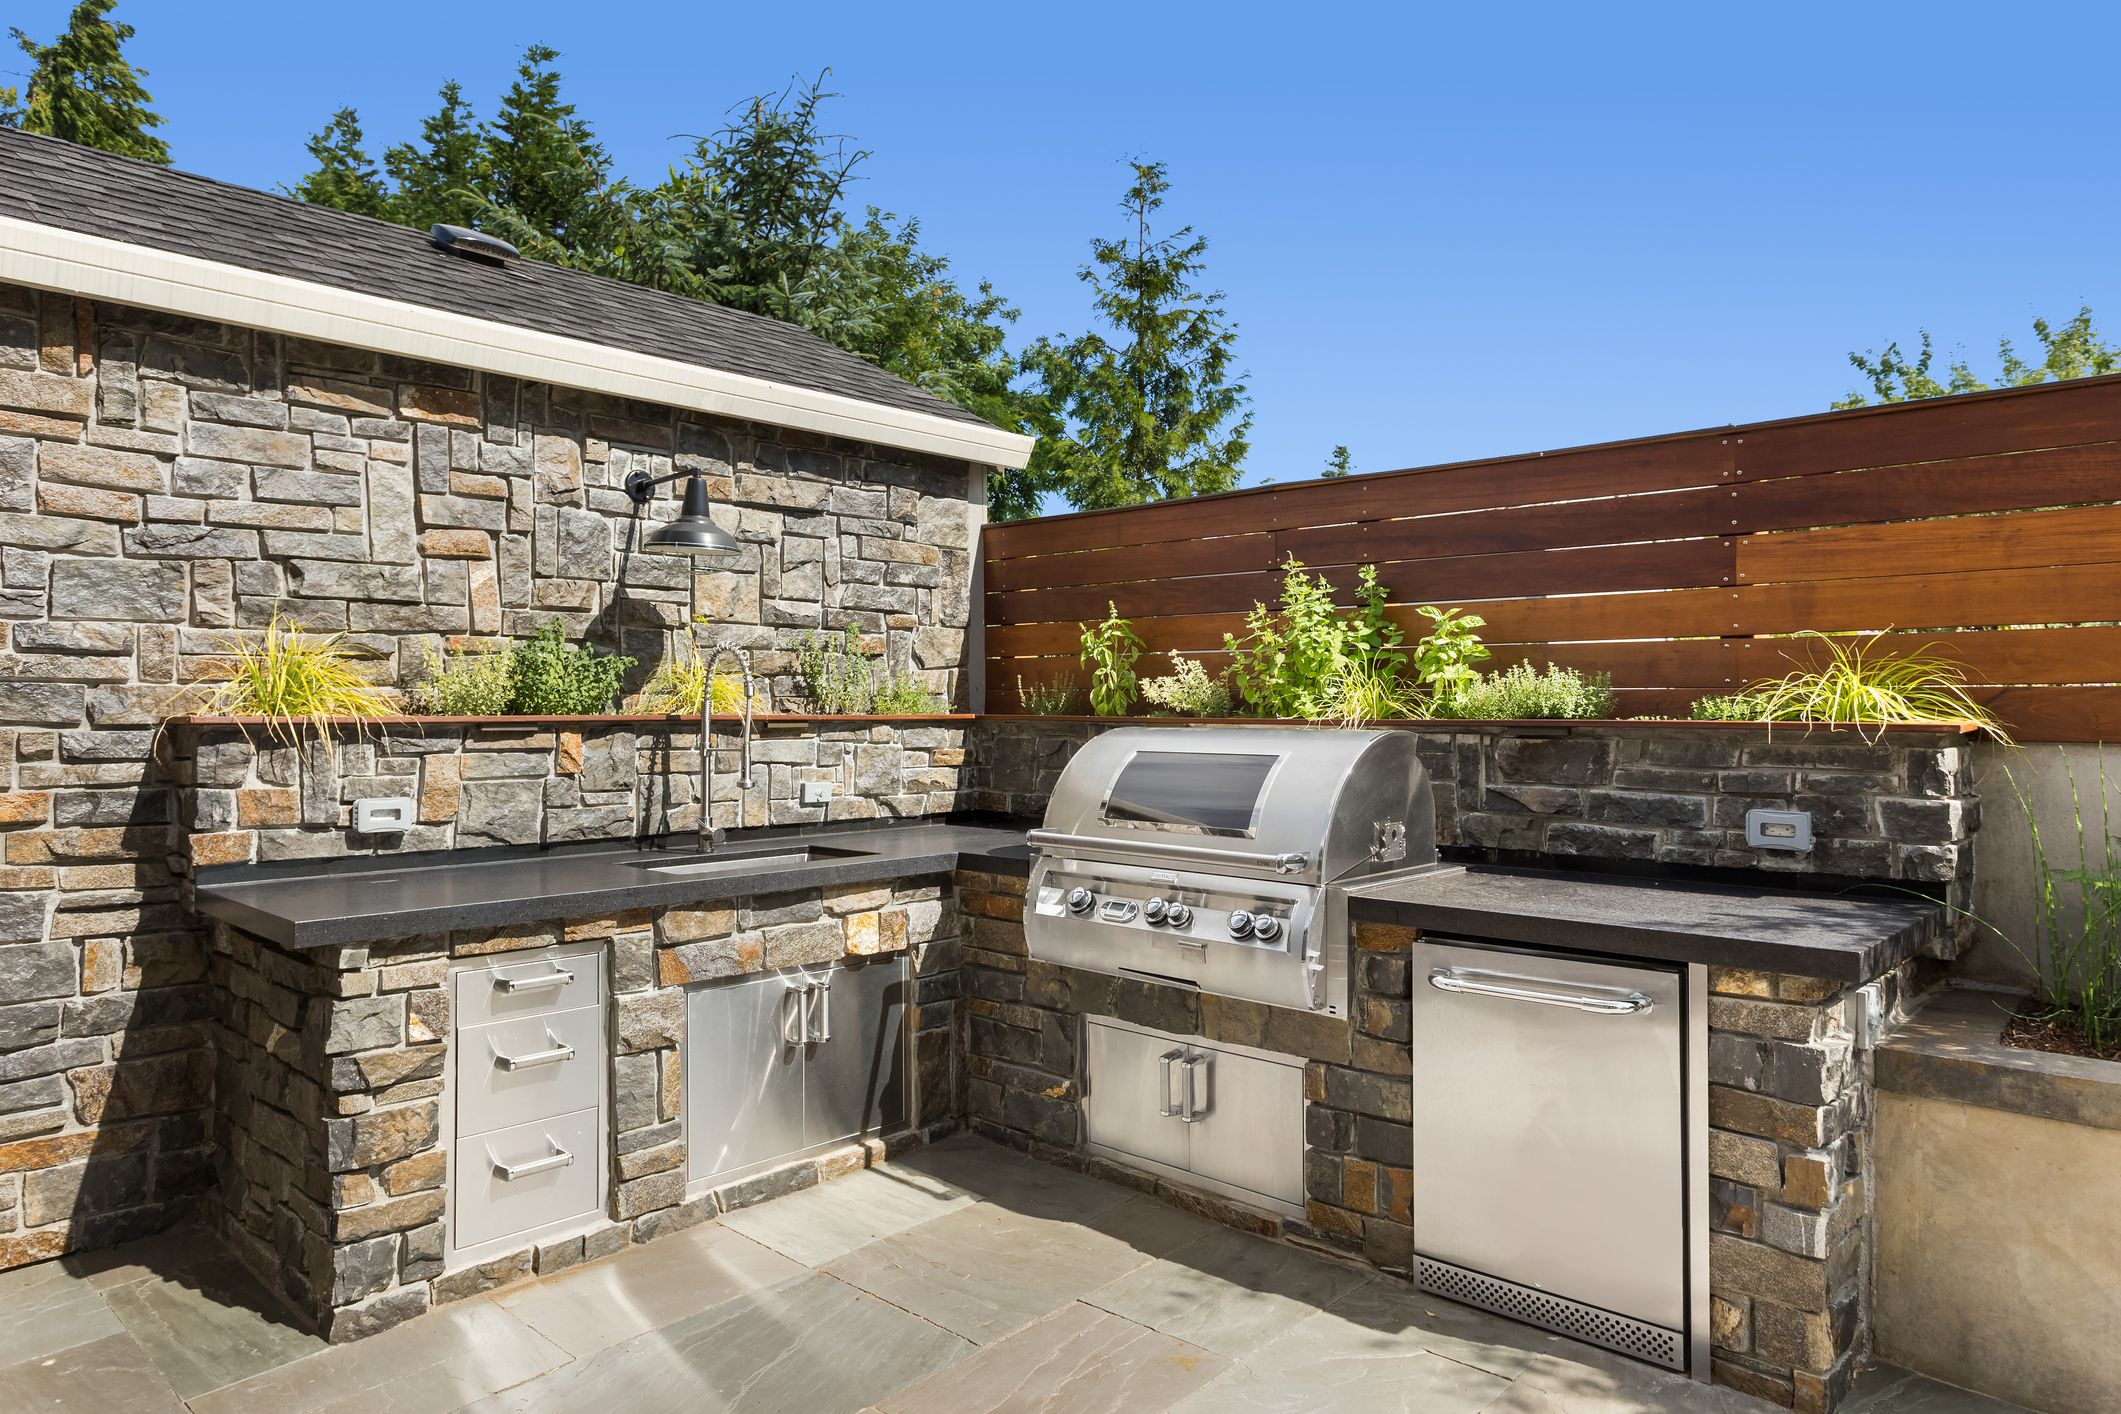 25 Best Outdoor Kitchen Ideas - Outdoor Kitchen Designs